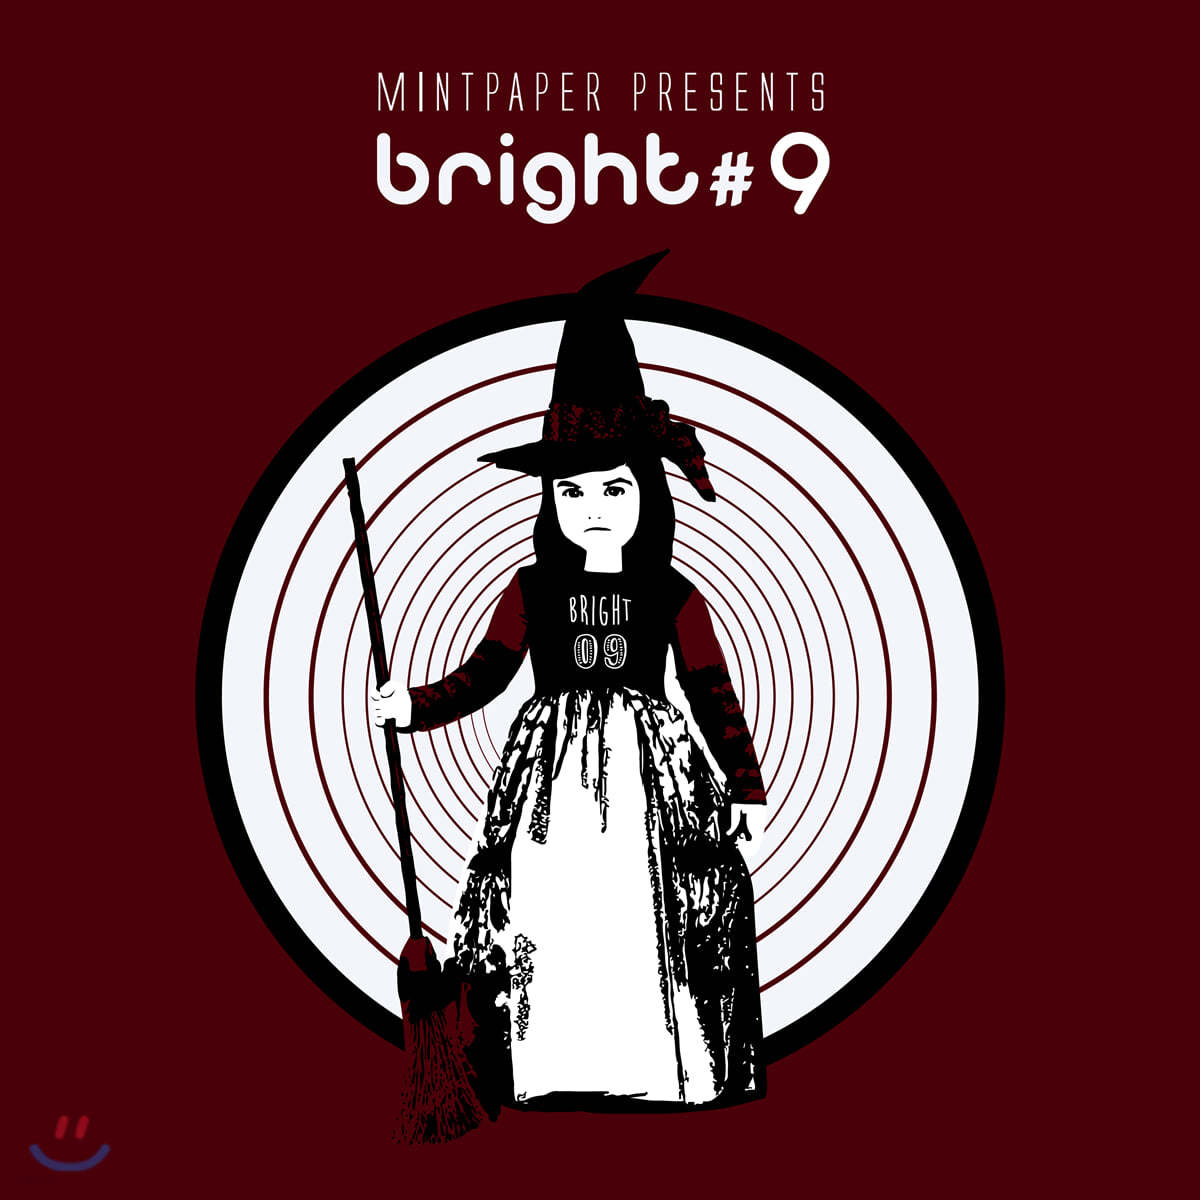 MINTPAPER presents bright #9